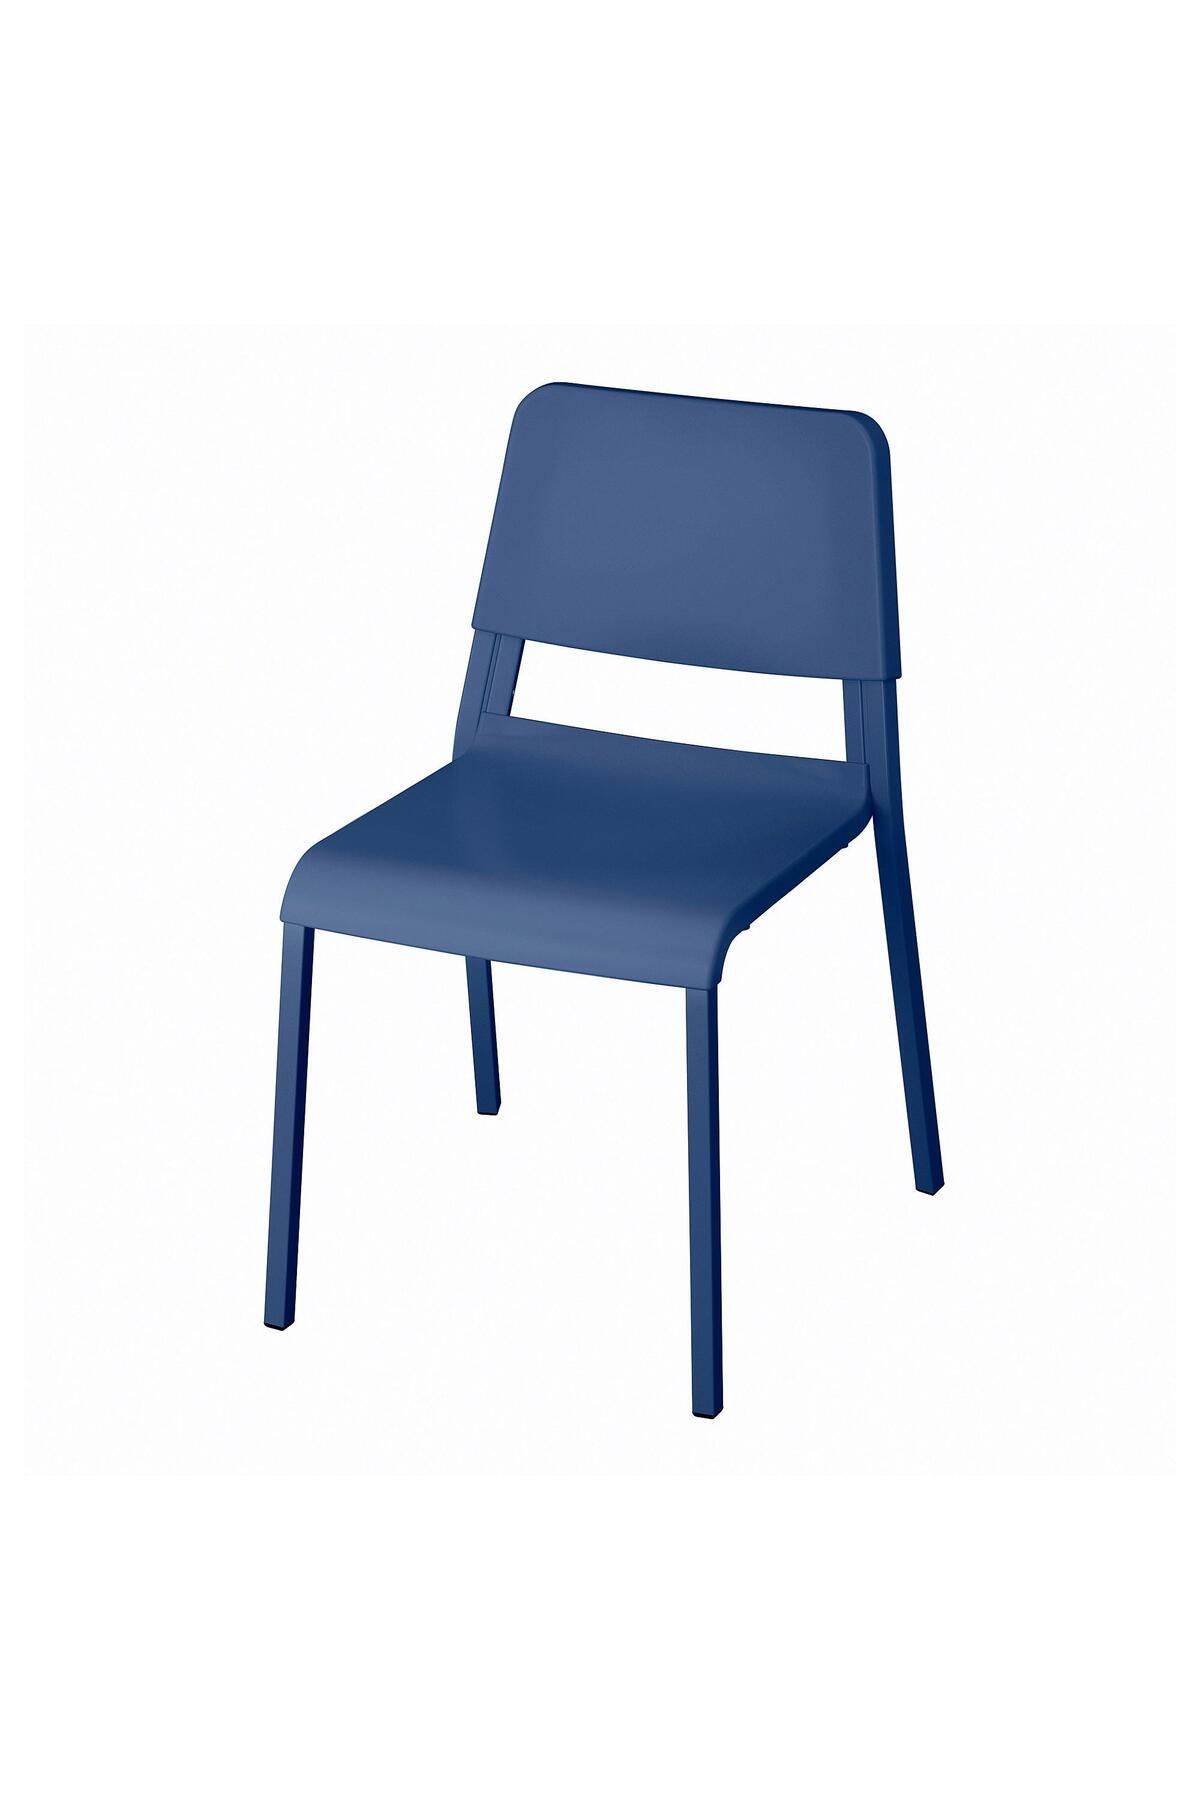 IKEA Plastik Sandalye, Mavi Renk MeridyenDukkan Salon-Mutfak-Balkon Sandalyesi